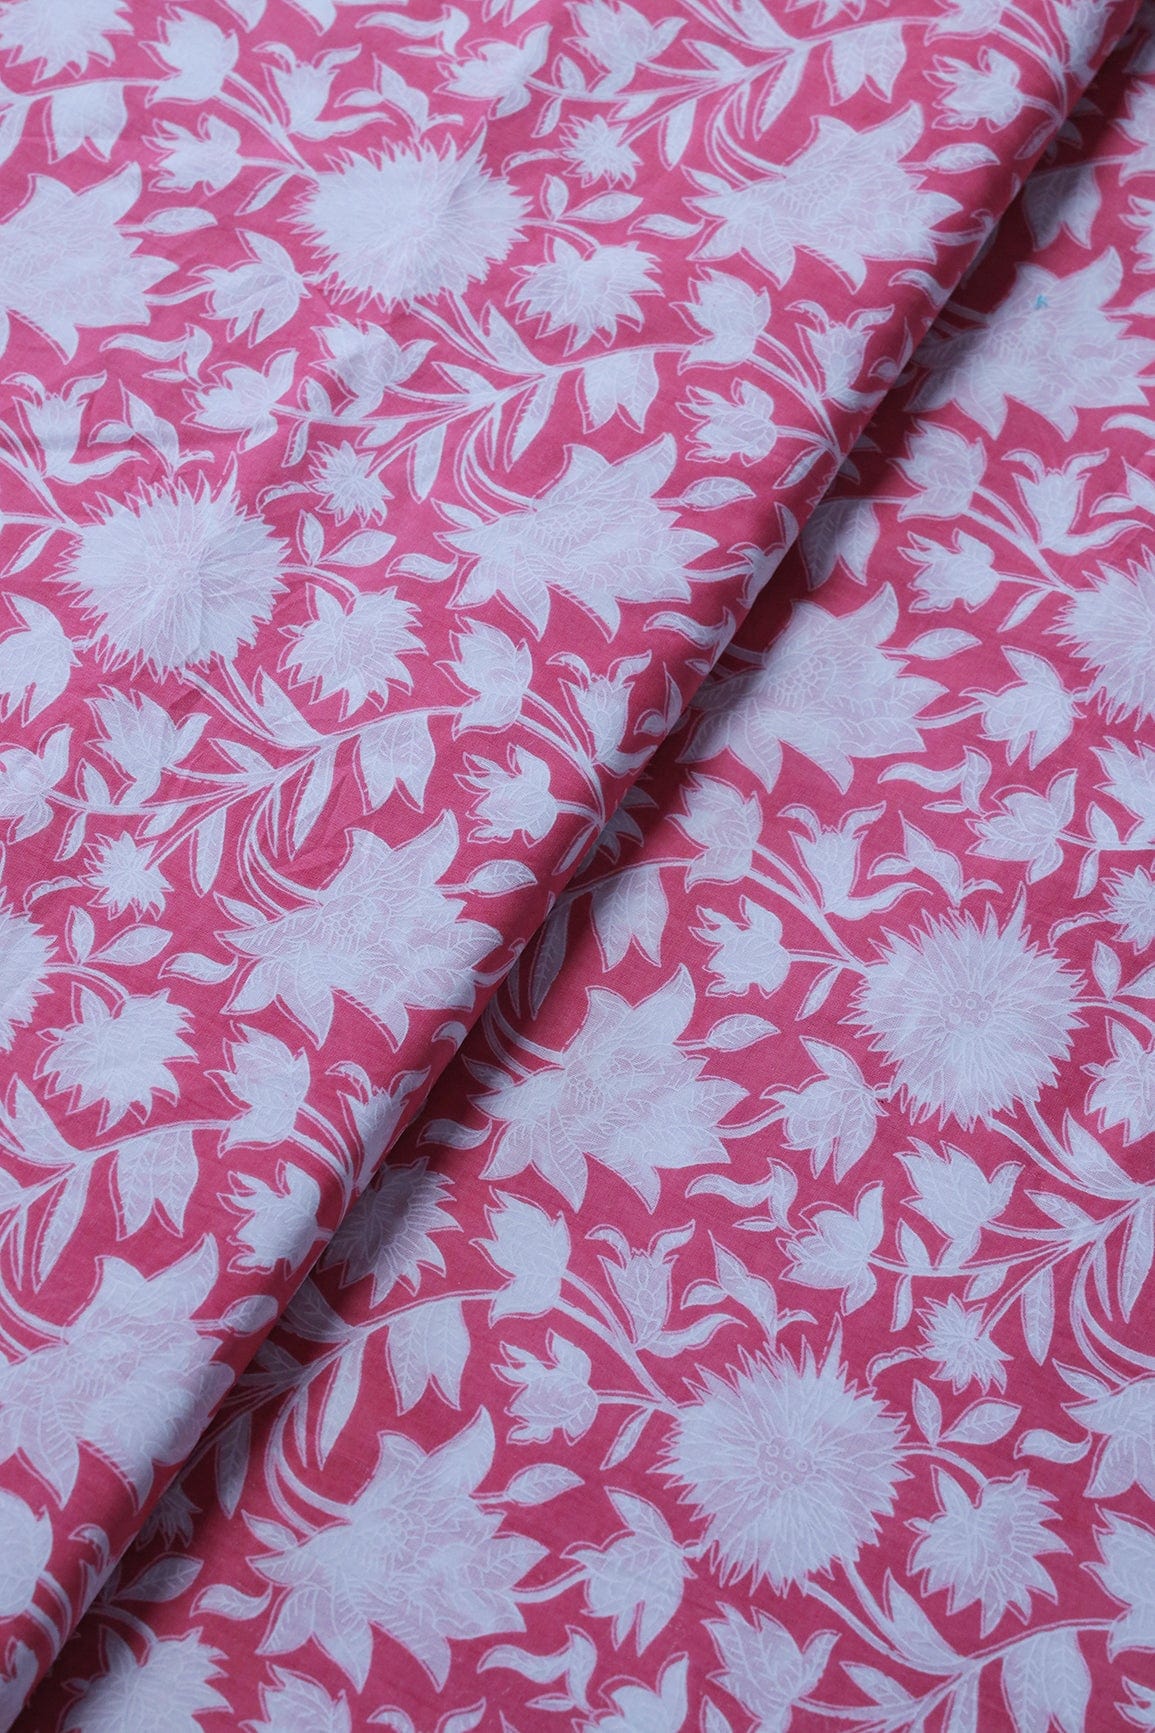 doeraa SUIT SETS Pink And White Pure Cotton Unstitched Suit Set (2 Piece)